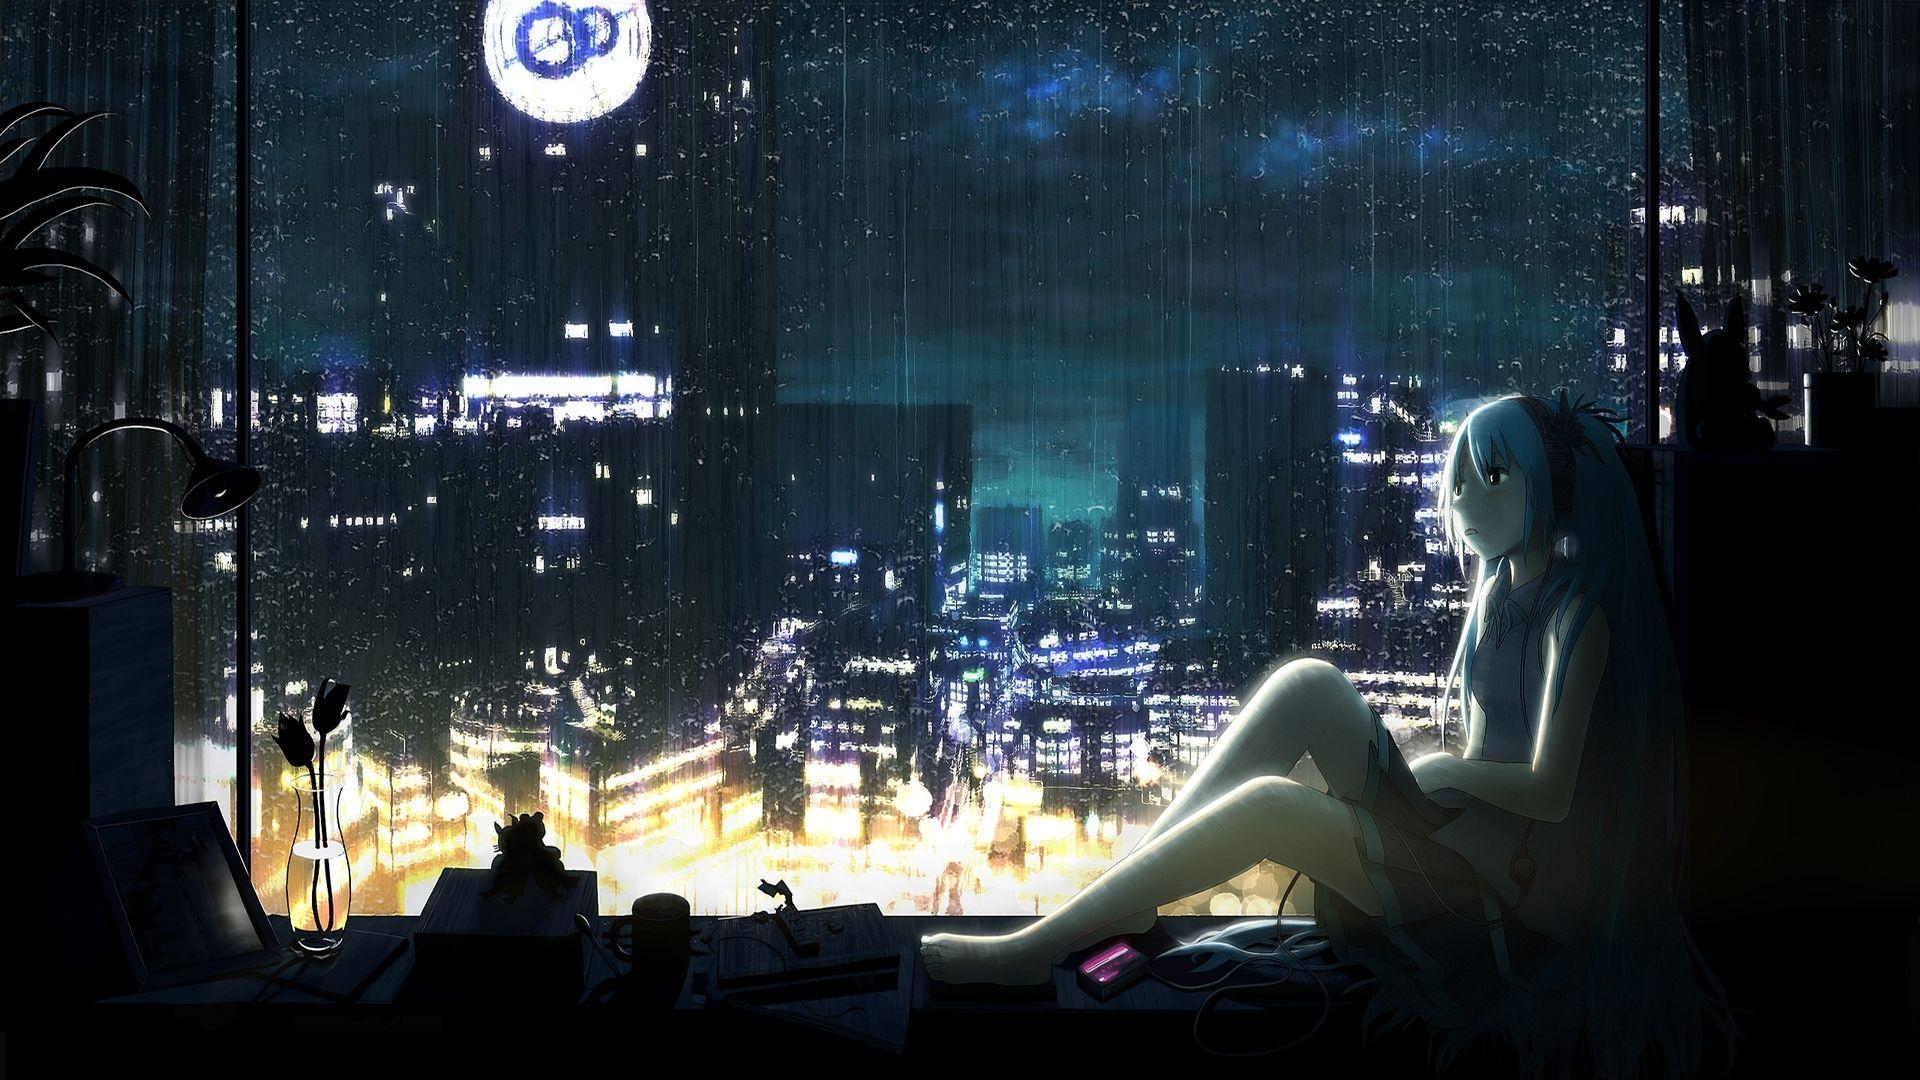 HD desktop wallpaper Anime Rain City download free picture 202480